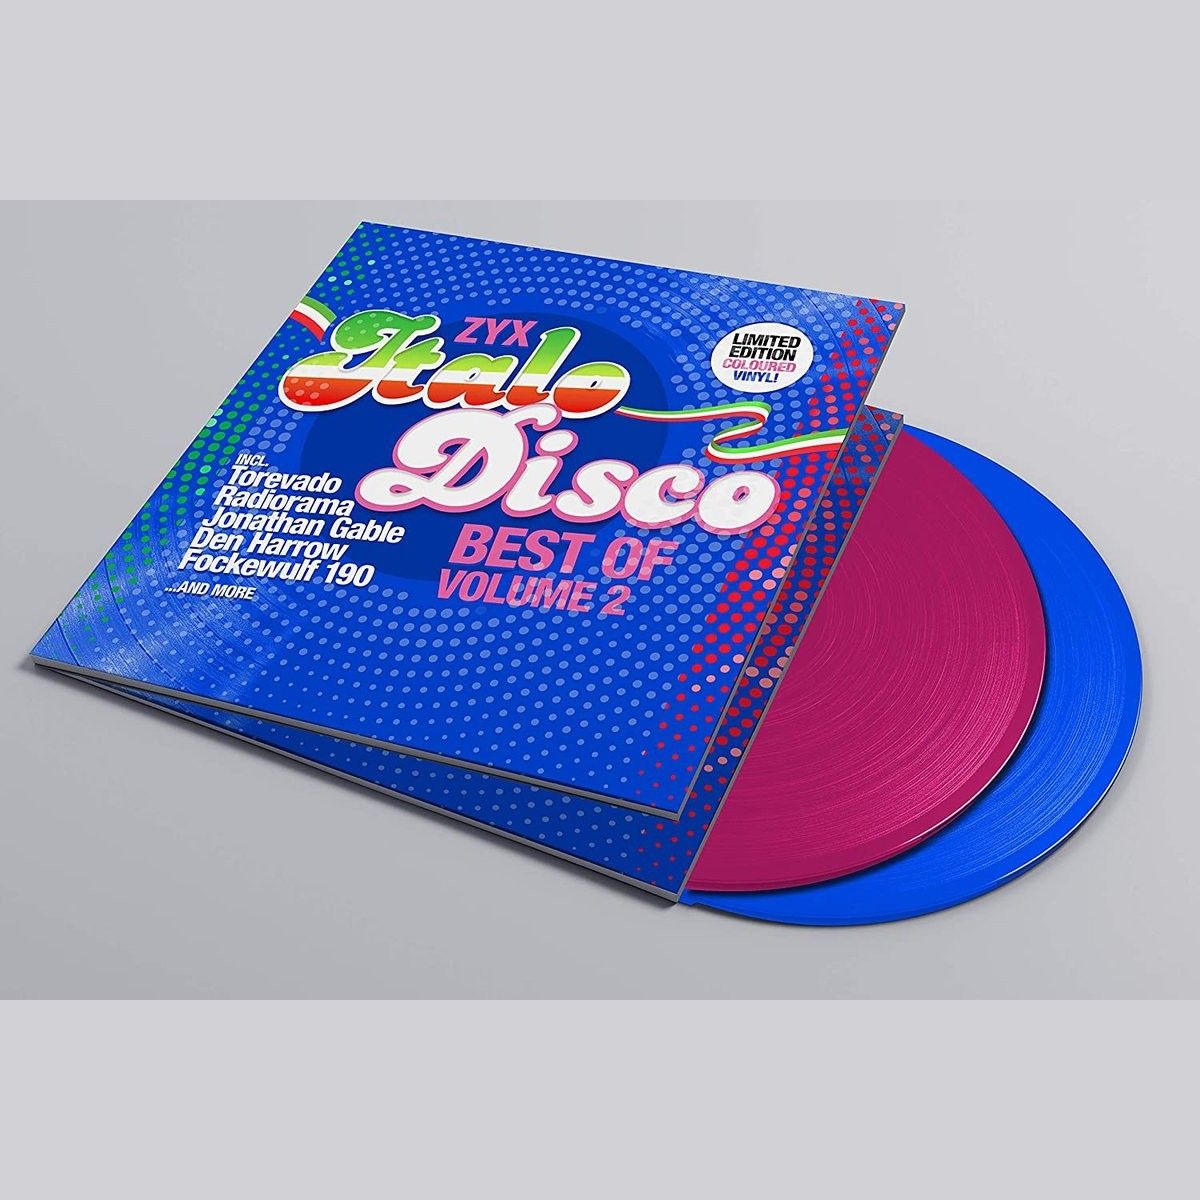 Zyx italo disco new. Итало диско. Italo Disco Vol 2. Va - ZYX Italo Disco Spacesynth collection 2. The best of Italo Disco.